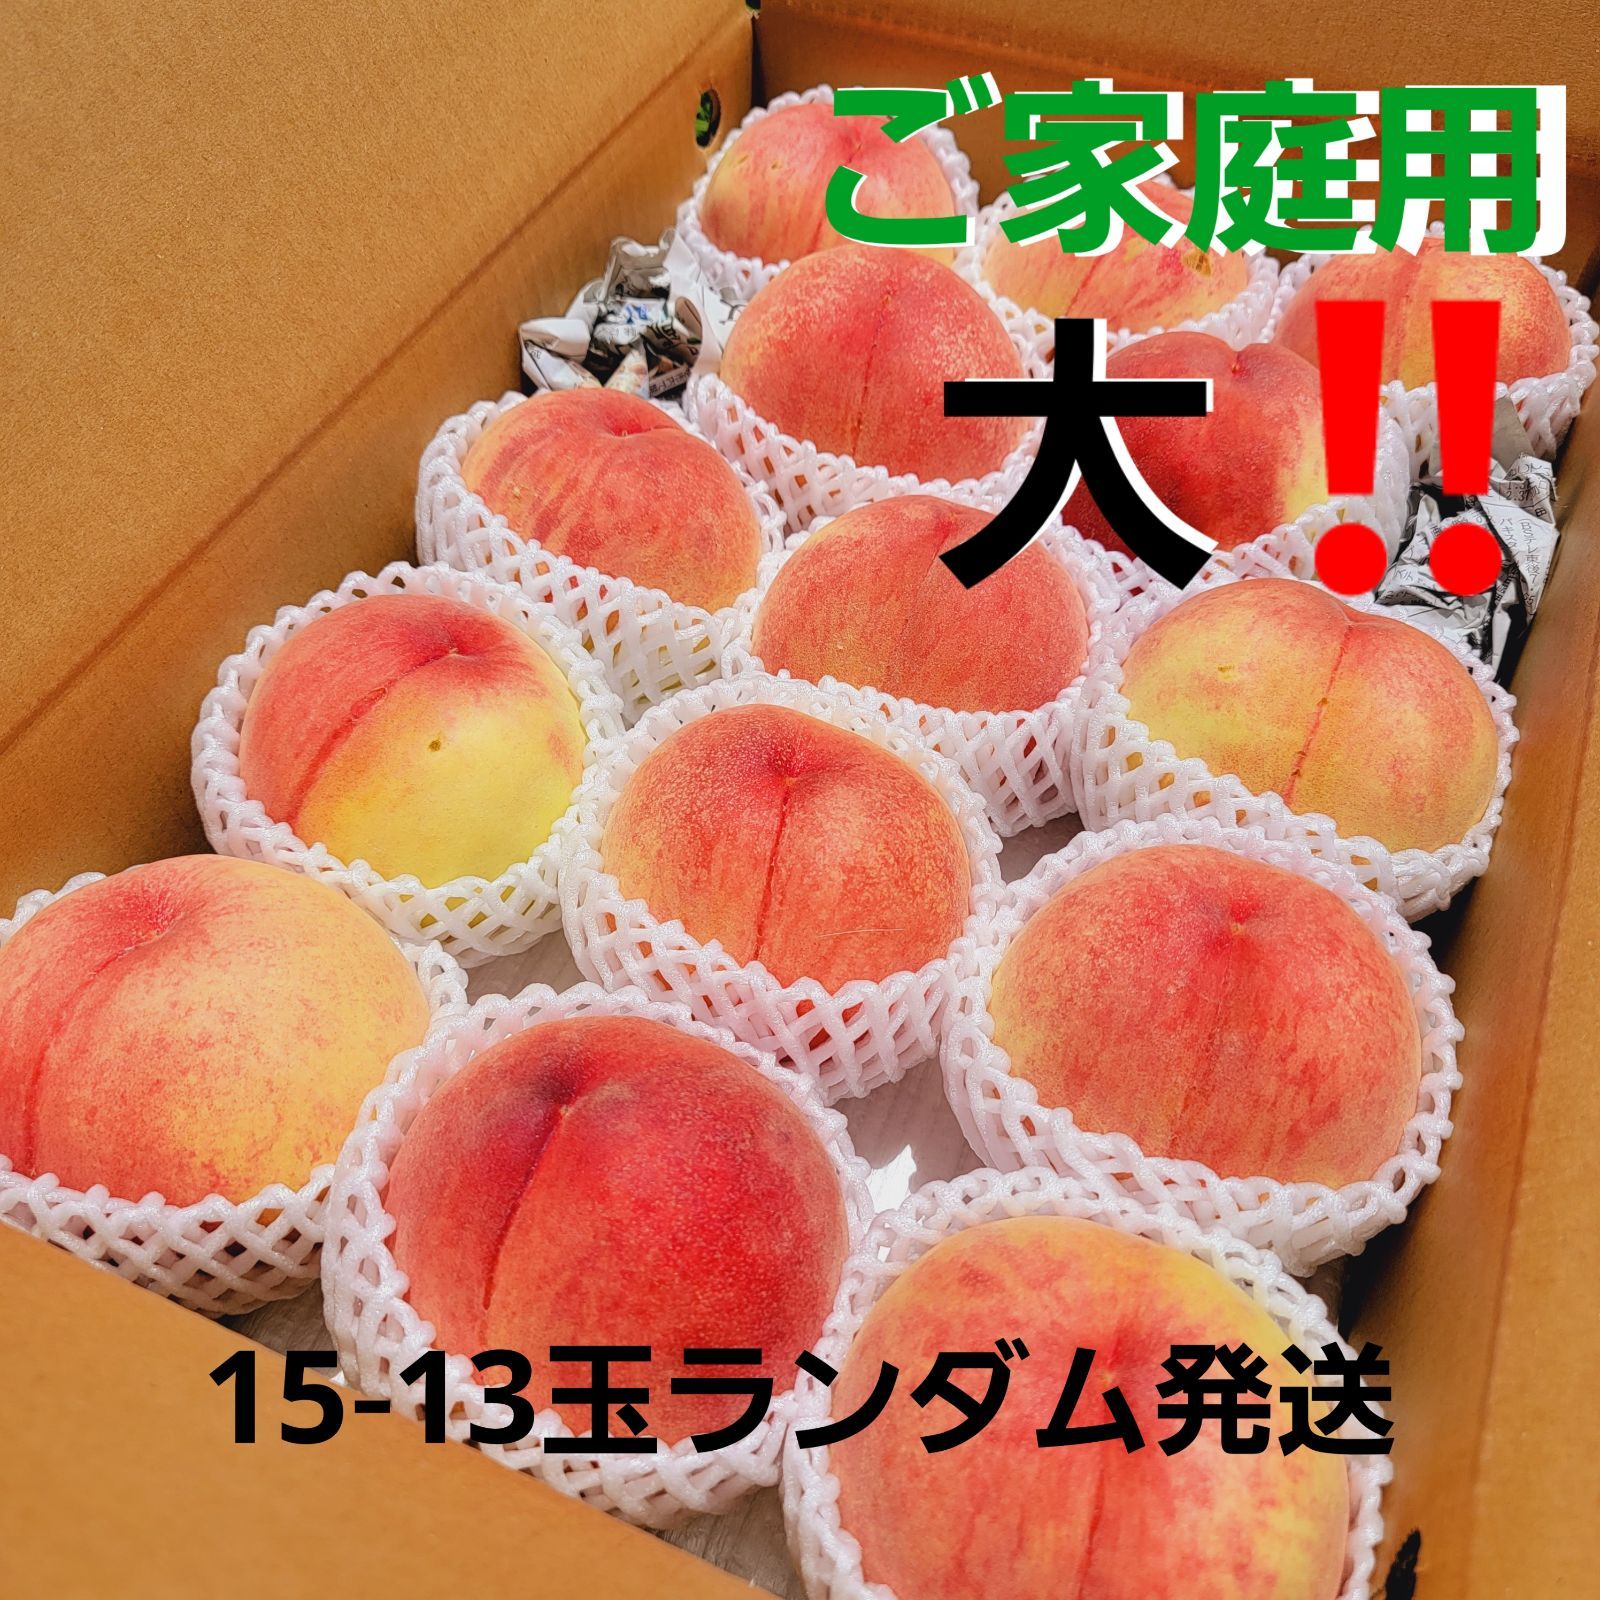 激安通販販売 ご家庭用 大 あかつき 5キロ箱 果物 | parago.jp